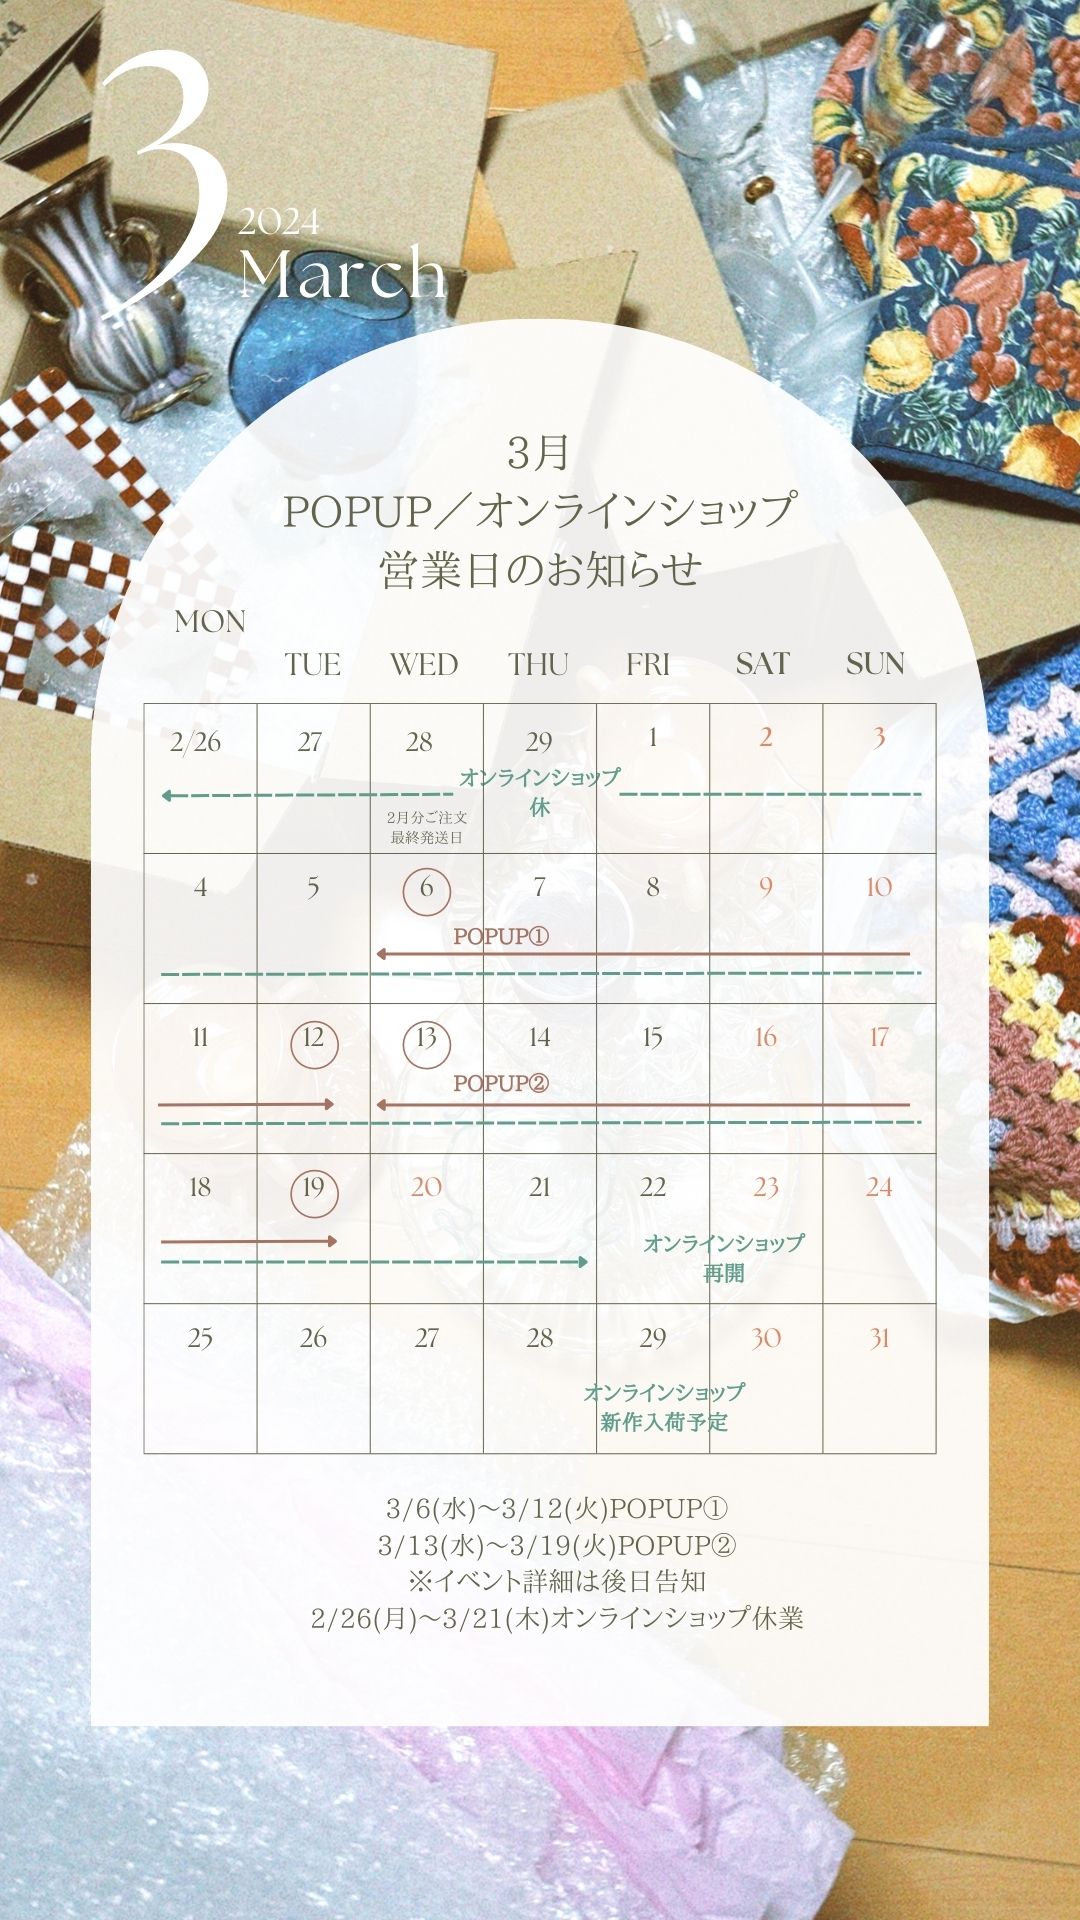 【2月〜3月】POPUP／オンラインショップ営業日のお知らせ